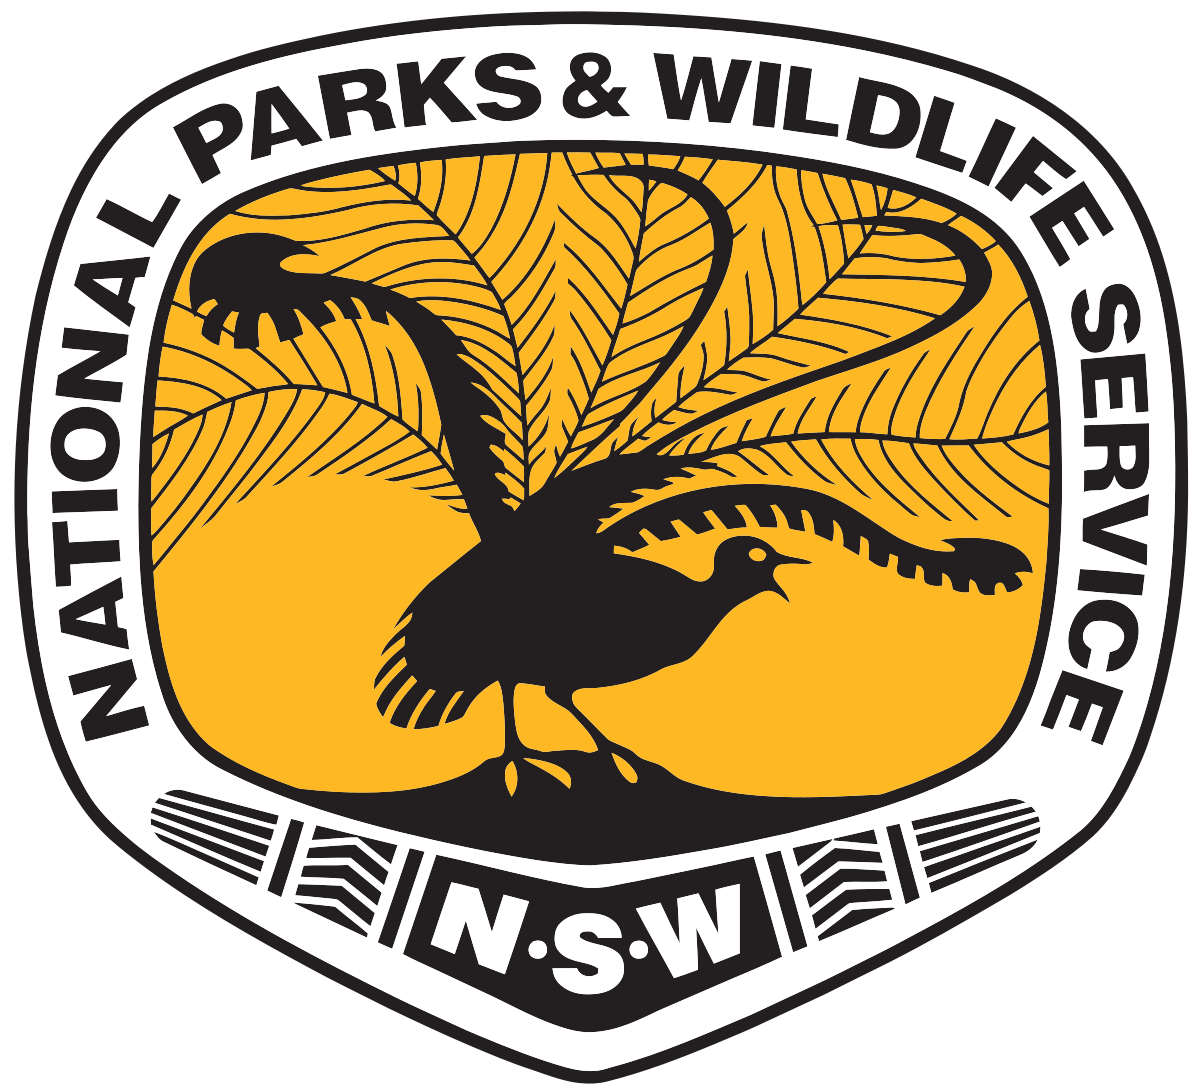 NSW Parks & Wildlife